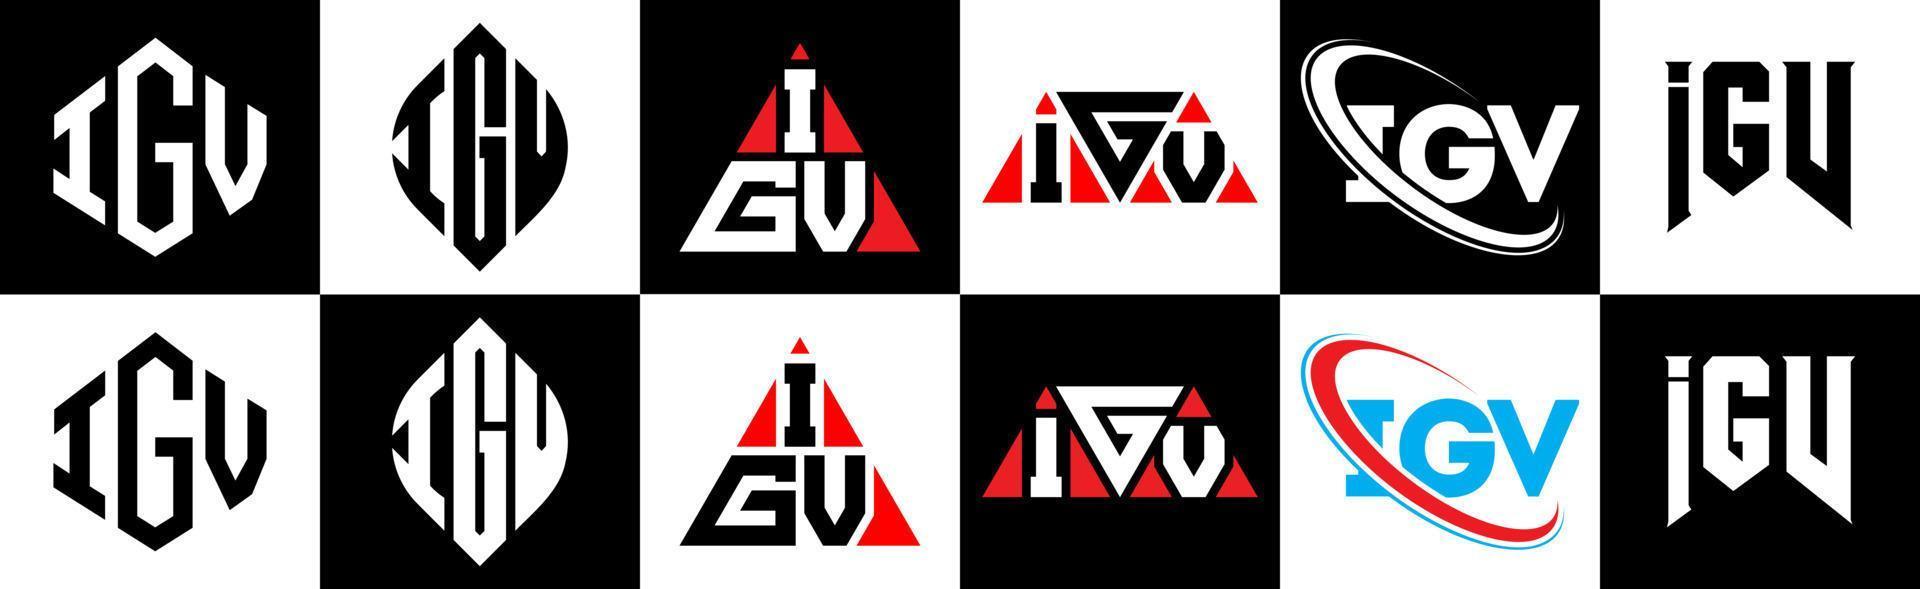 création de logo de lettre igv en six styles. polygone igv, cercle, triangle, hexagone, style plat et simple avec logo de lettre de variation de couleur noir et blanc dans un plan de travail. logo minimaliste et classique igv vecteur